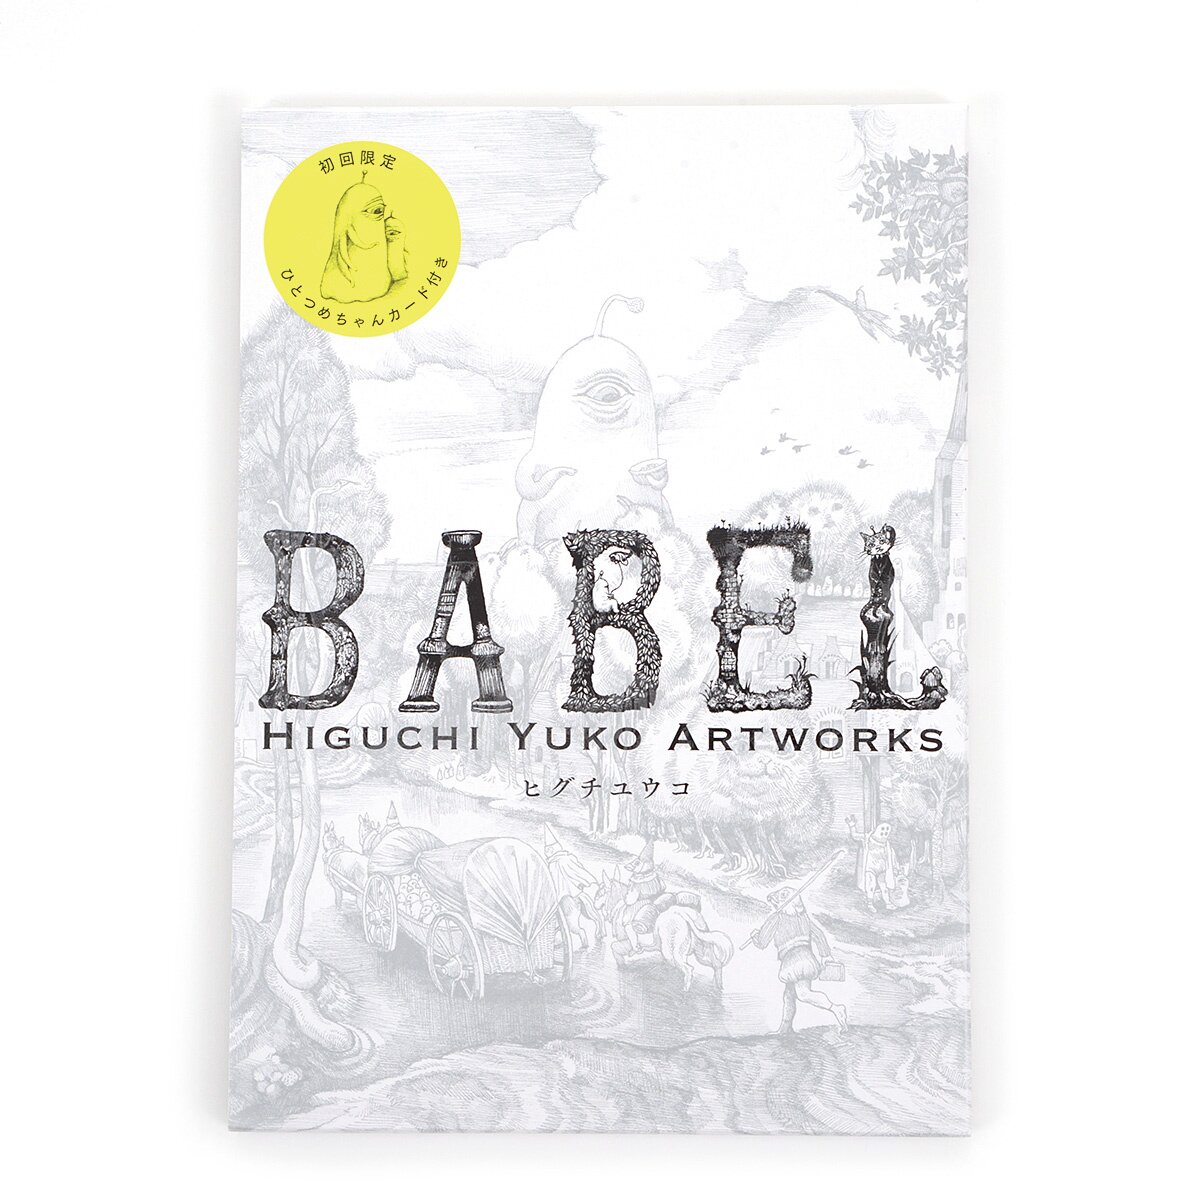 Babel: Higuchi Yuko Artworks (Limited First Edition)